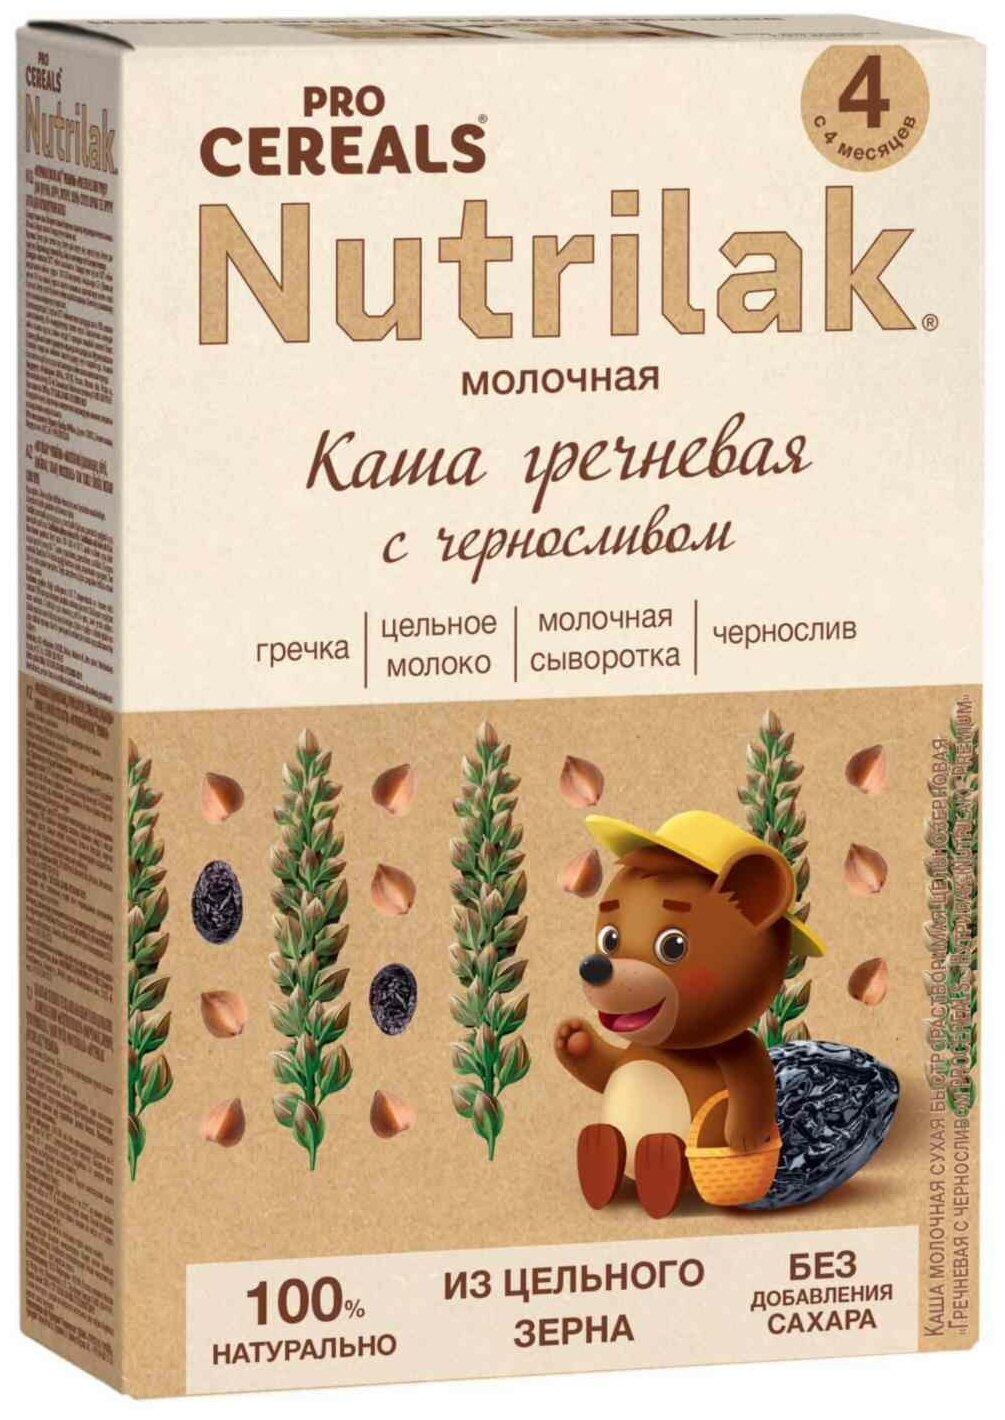 Каша гречневая с черносливом Nutrilak Premium Pro Cereals цельнозерновая молочная, 200гр - фото №16